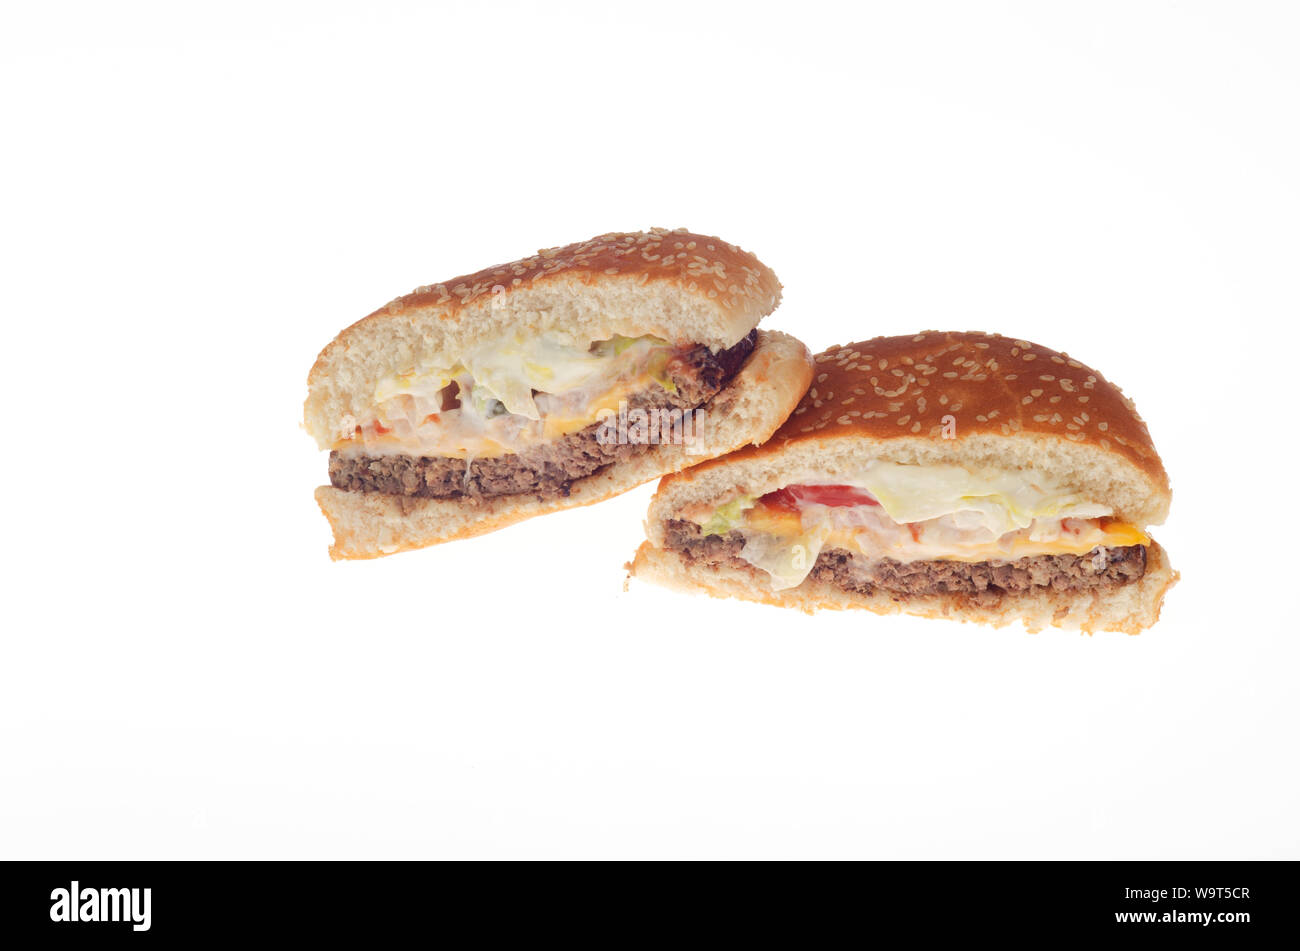 Burger King Whopper impossibile con il formaggio tagliato a metà mostra vegetariano, impianto basato, carne libera patty Foto Stock